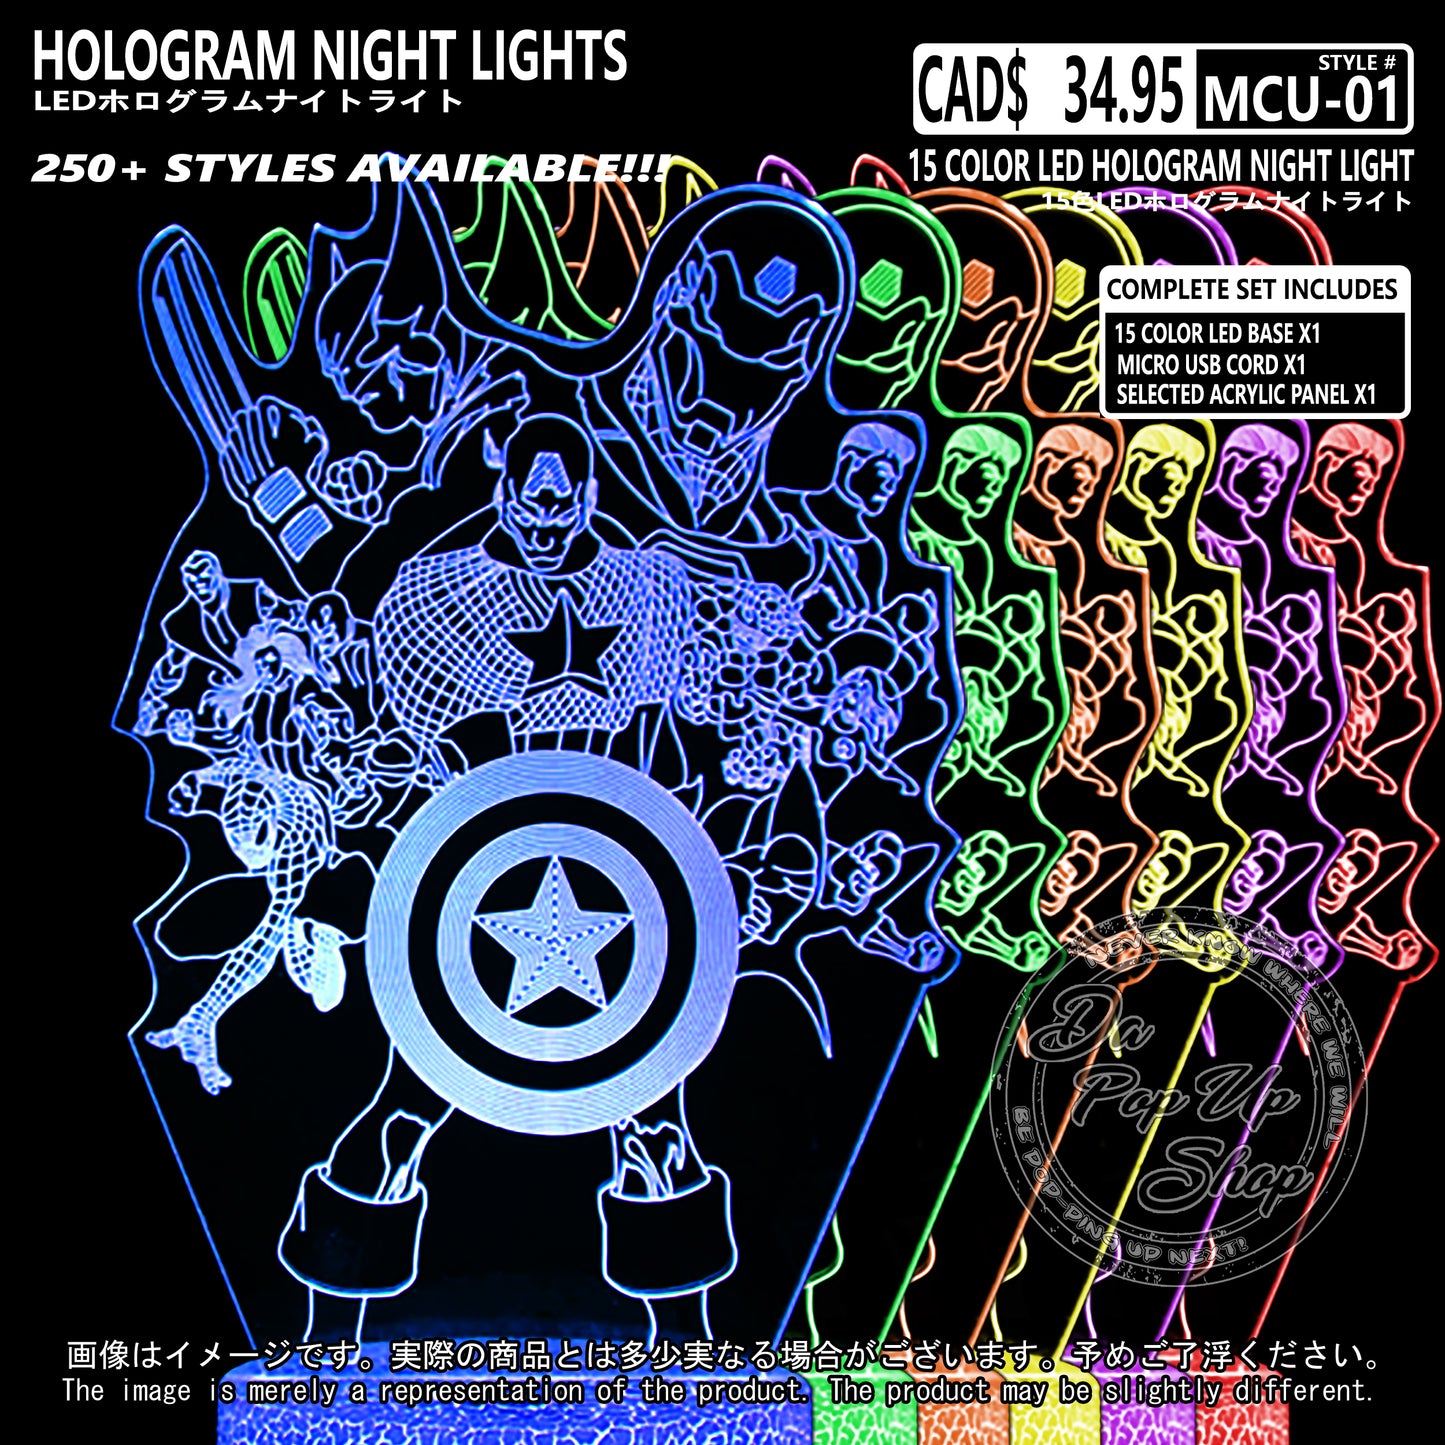 (MCU-01) MCU Marvel Cinematic Universal Hologram LED Night Light